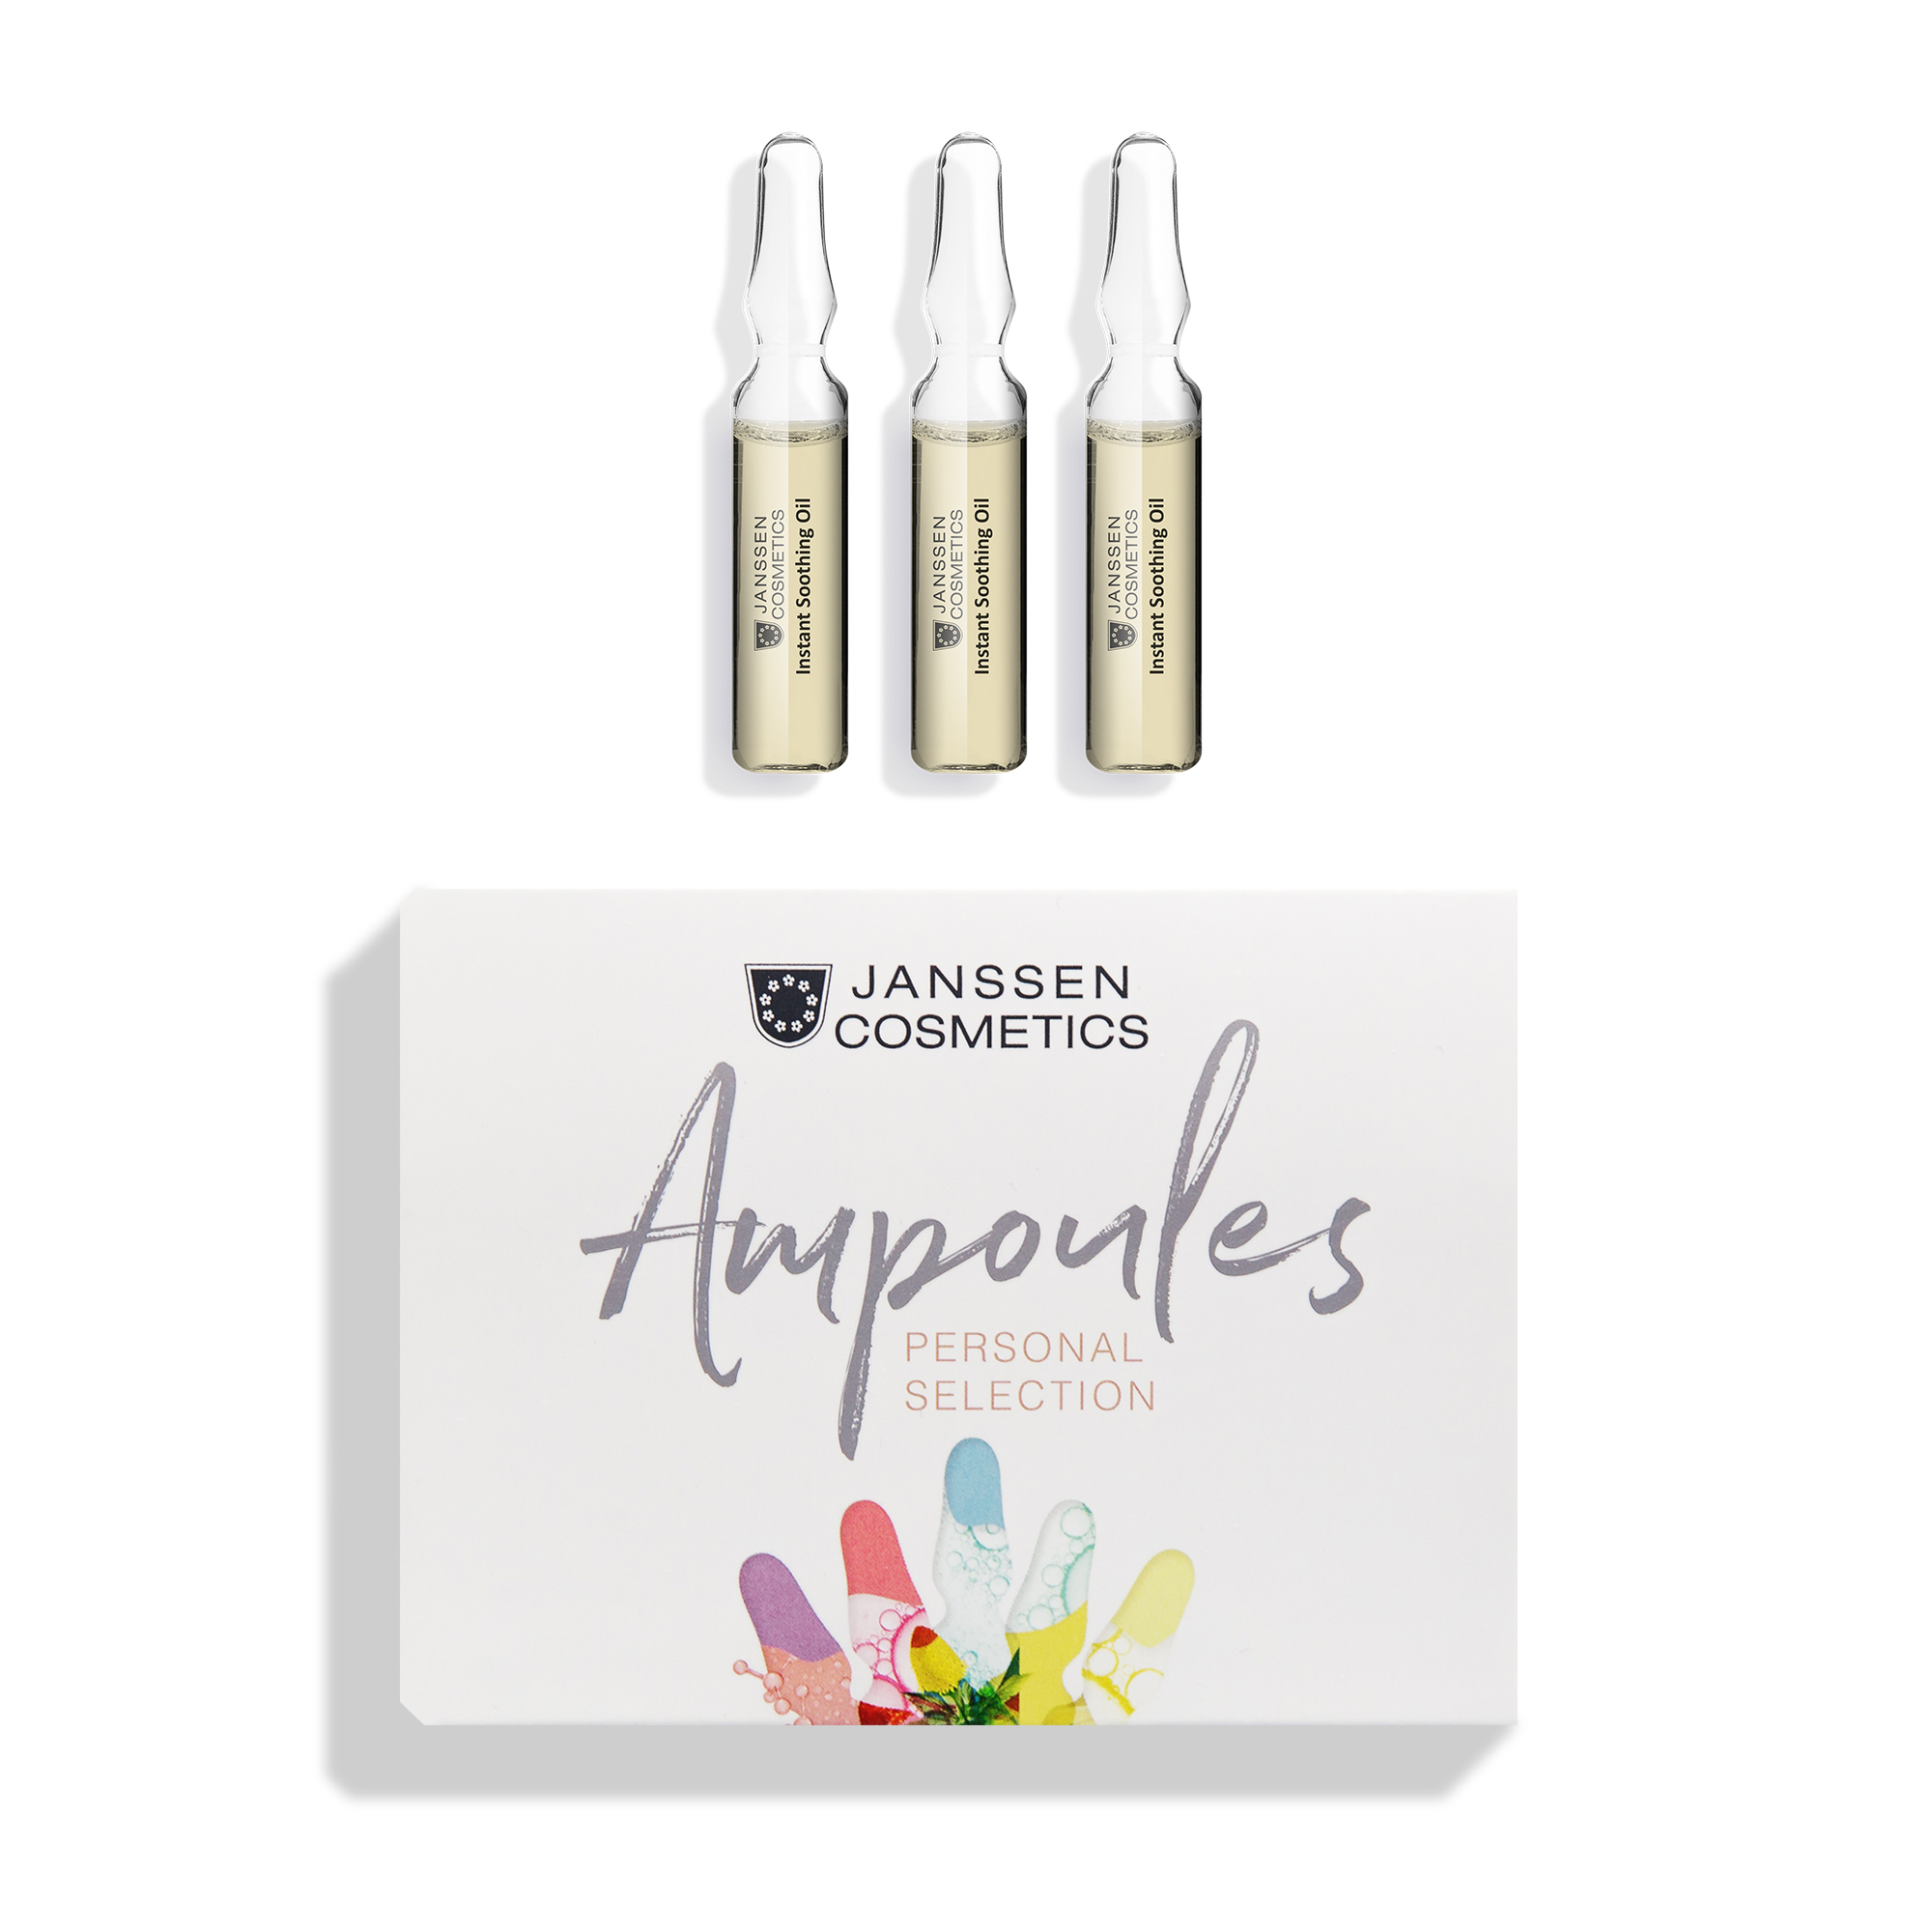 Масло в ампулах Janssen Cosmetics Instant Soothing Oil мгновенно успокаивающее 3 х 2 мл